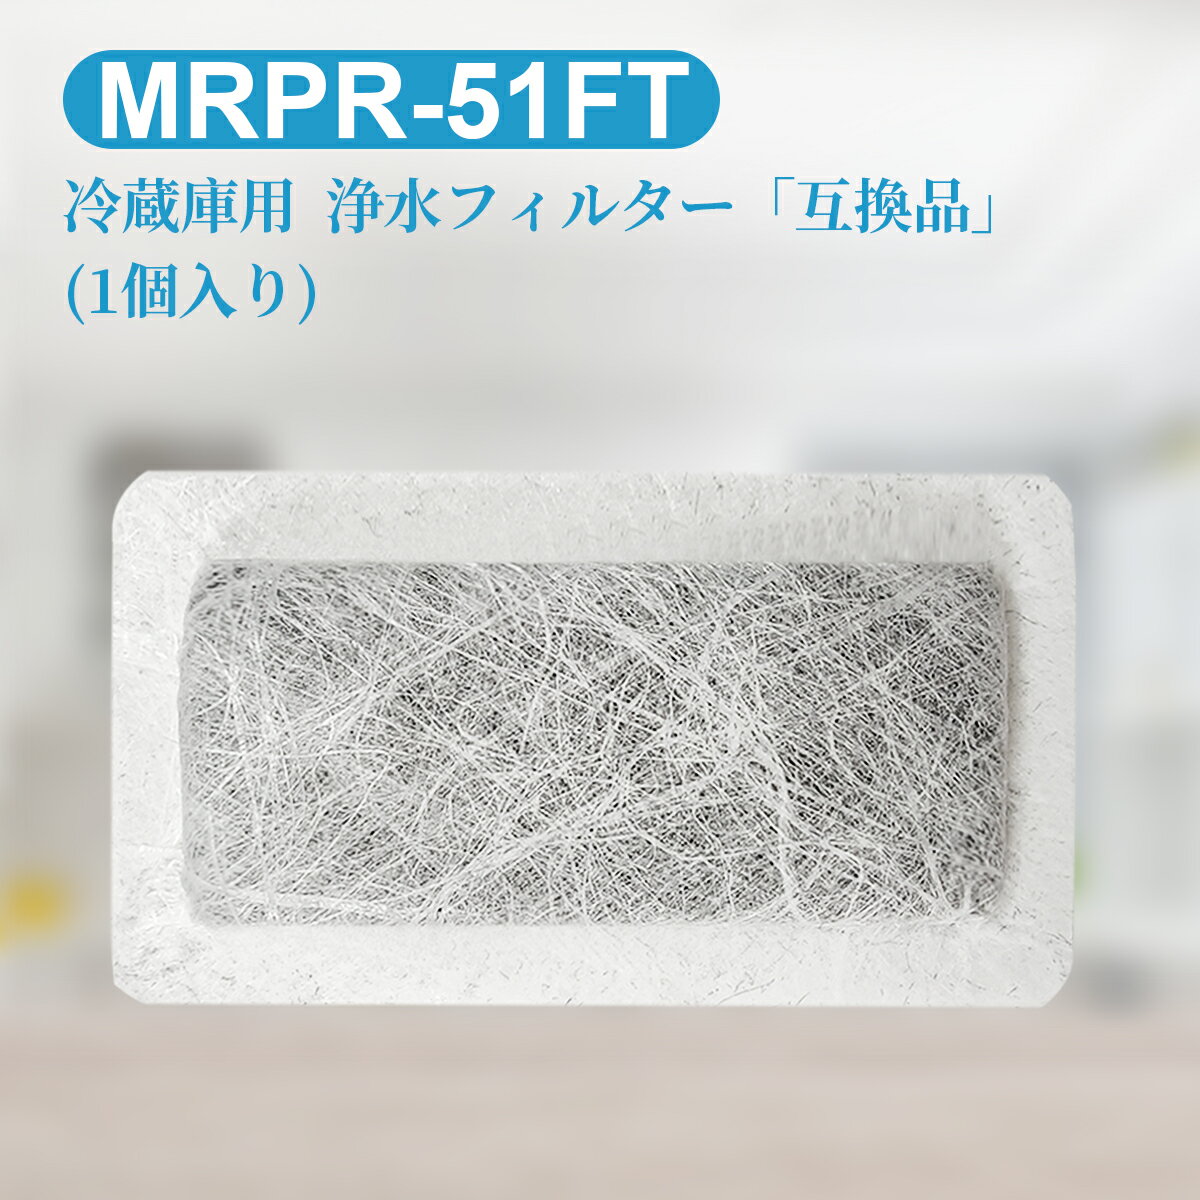 MRPR-51FT 冷蔵庫 自動製氷用 浄水フィルター mrpr-51ft 三菱 冷凍冷蔵庫 製氷機フィルター (互換品/1個入り)